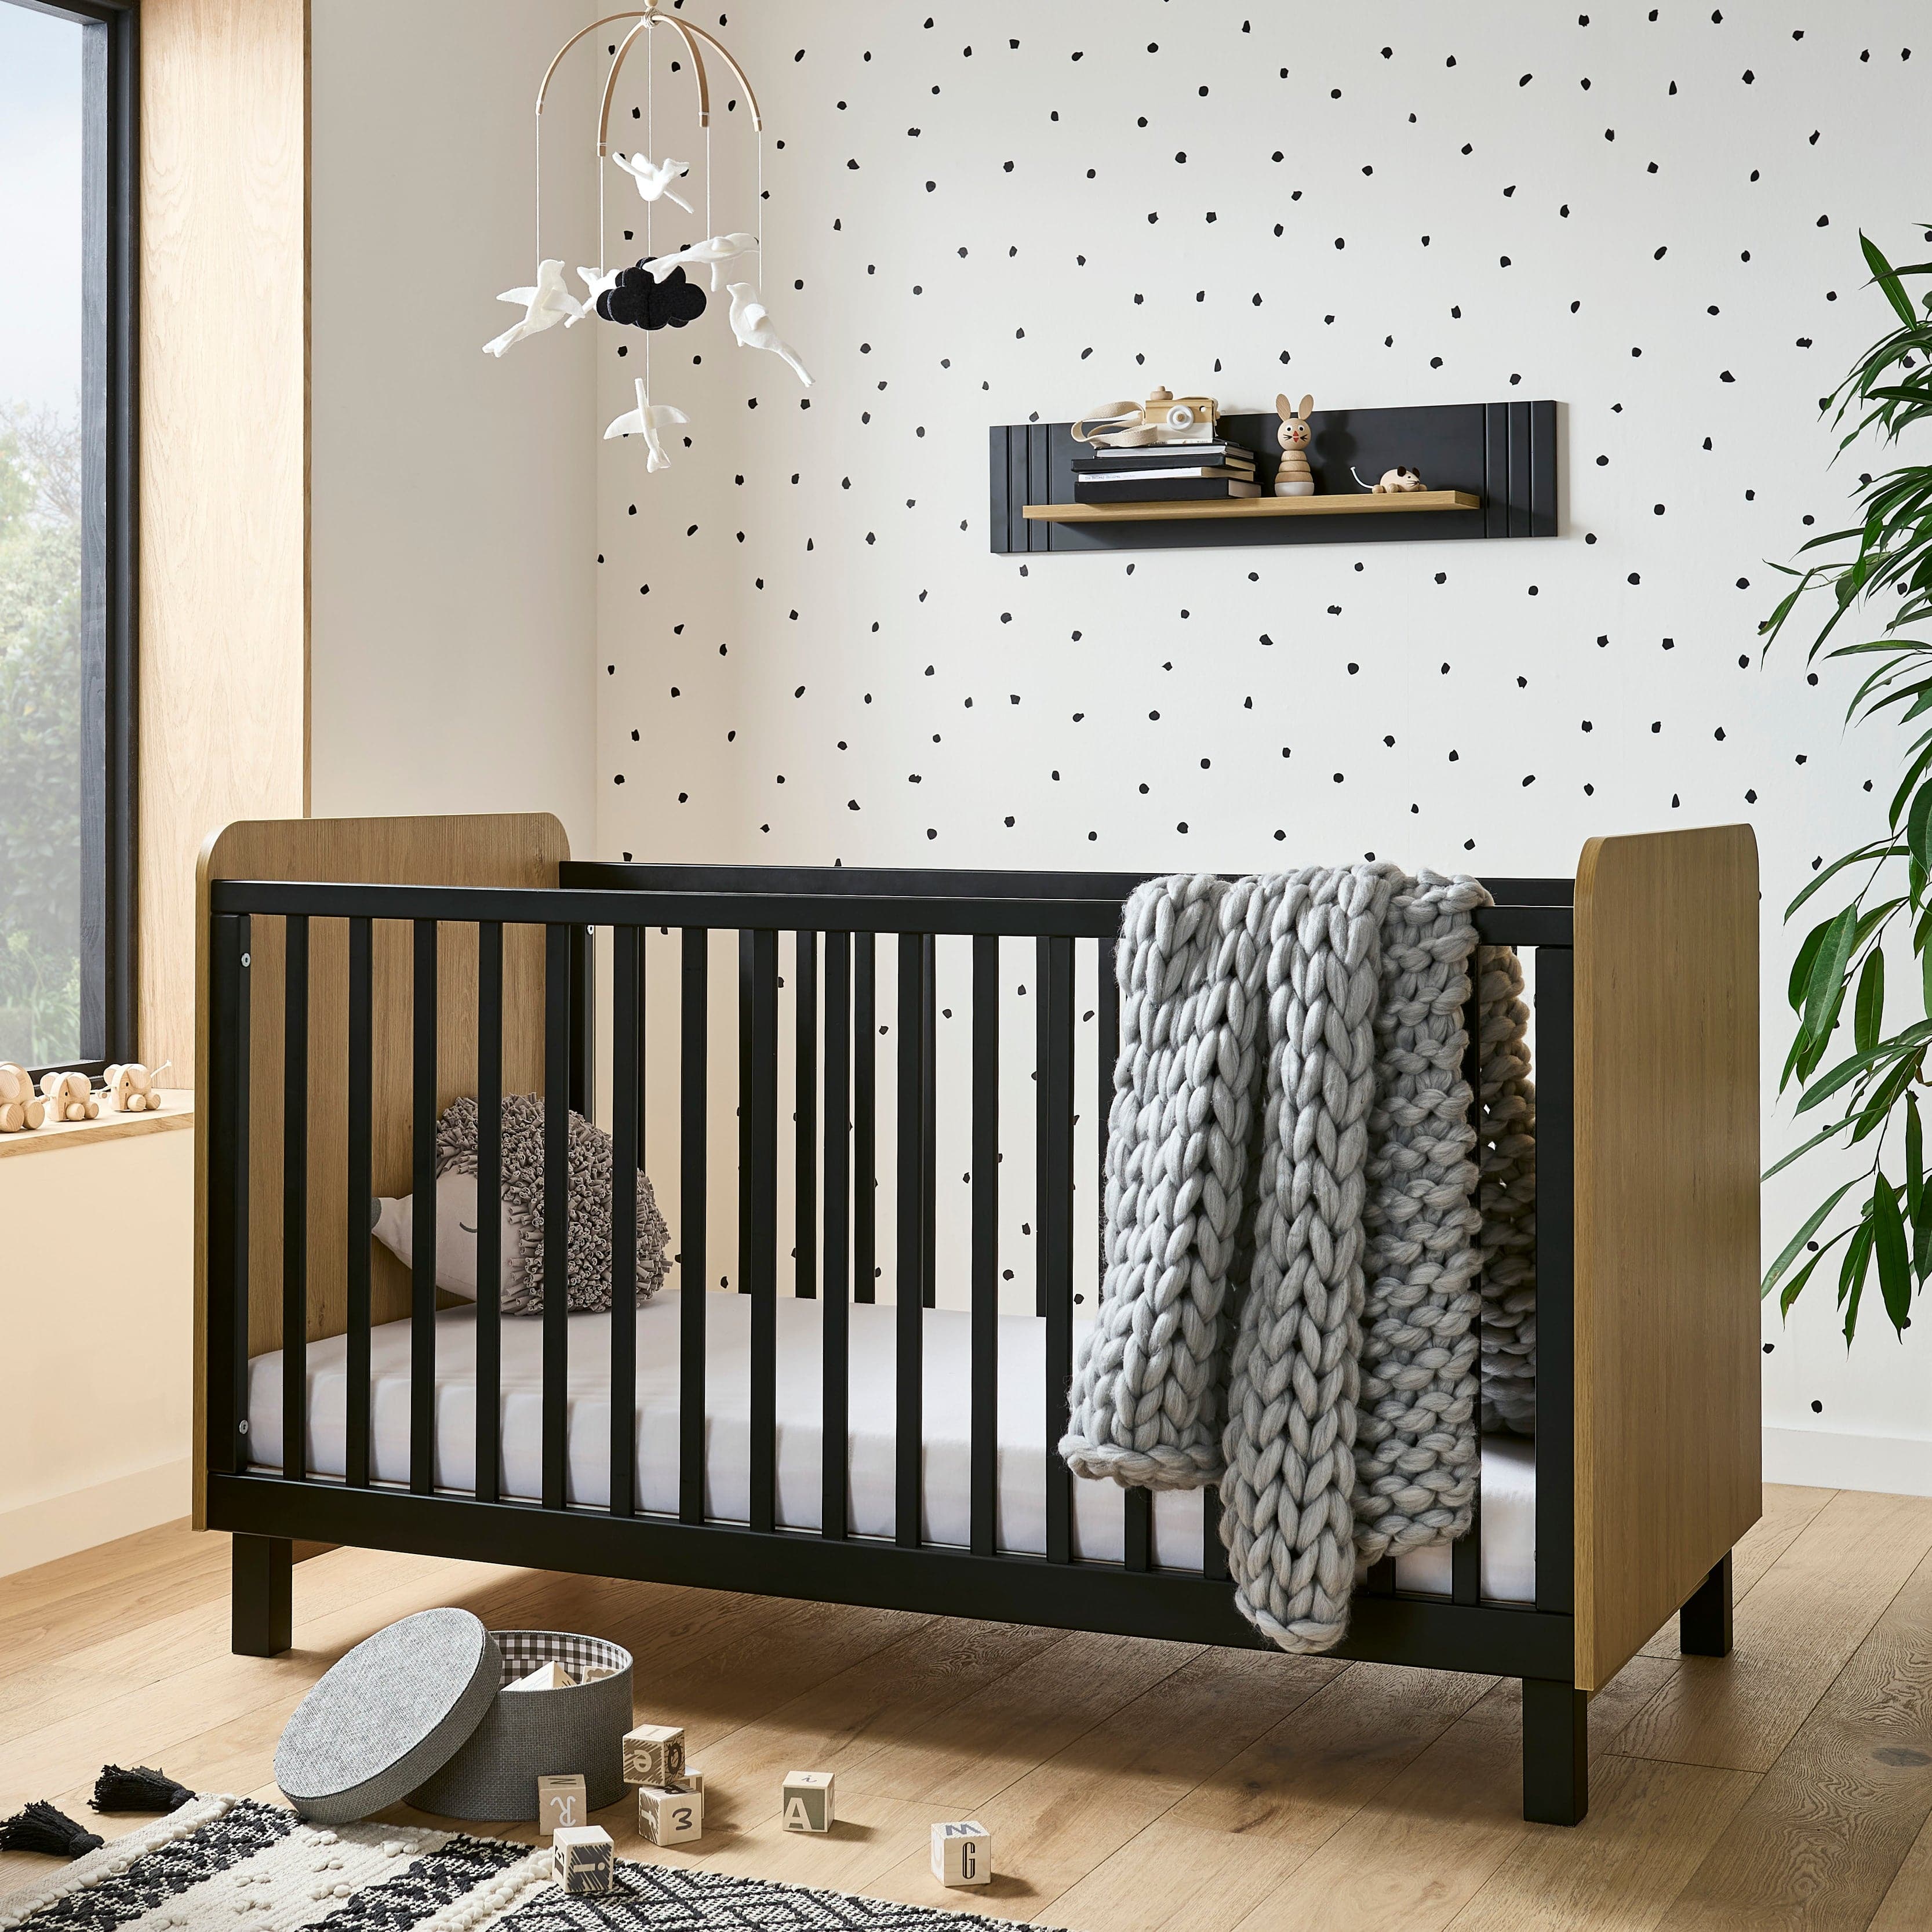 CuddleCo Rafi 2 Piece Room Set in Oak & Black Nursery Room Sets